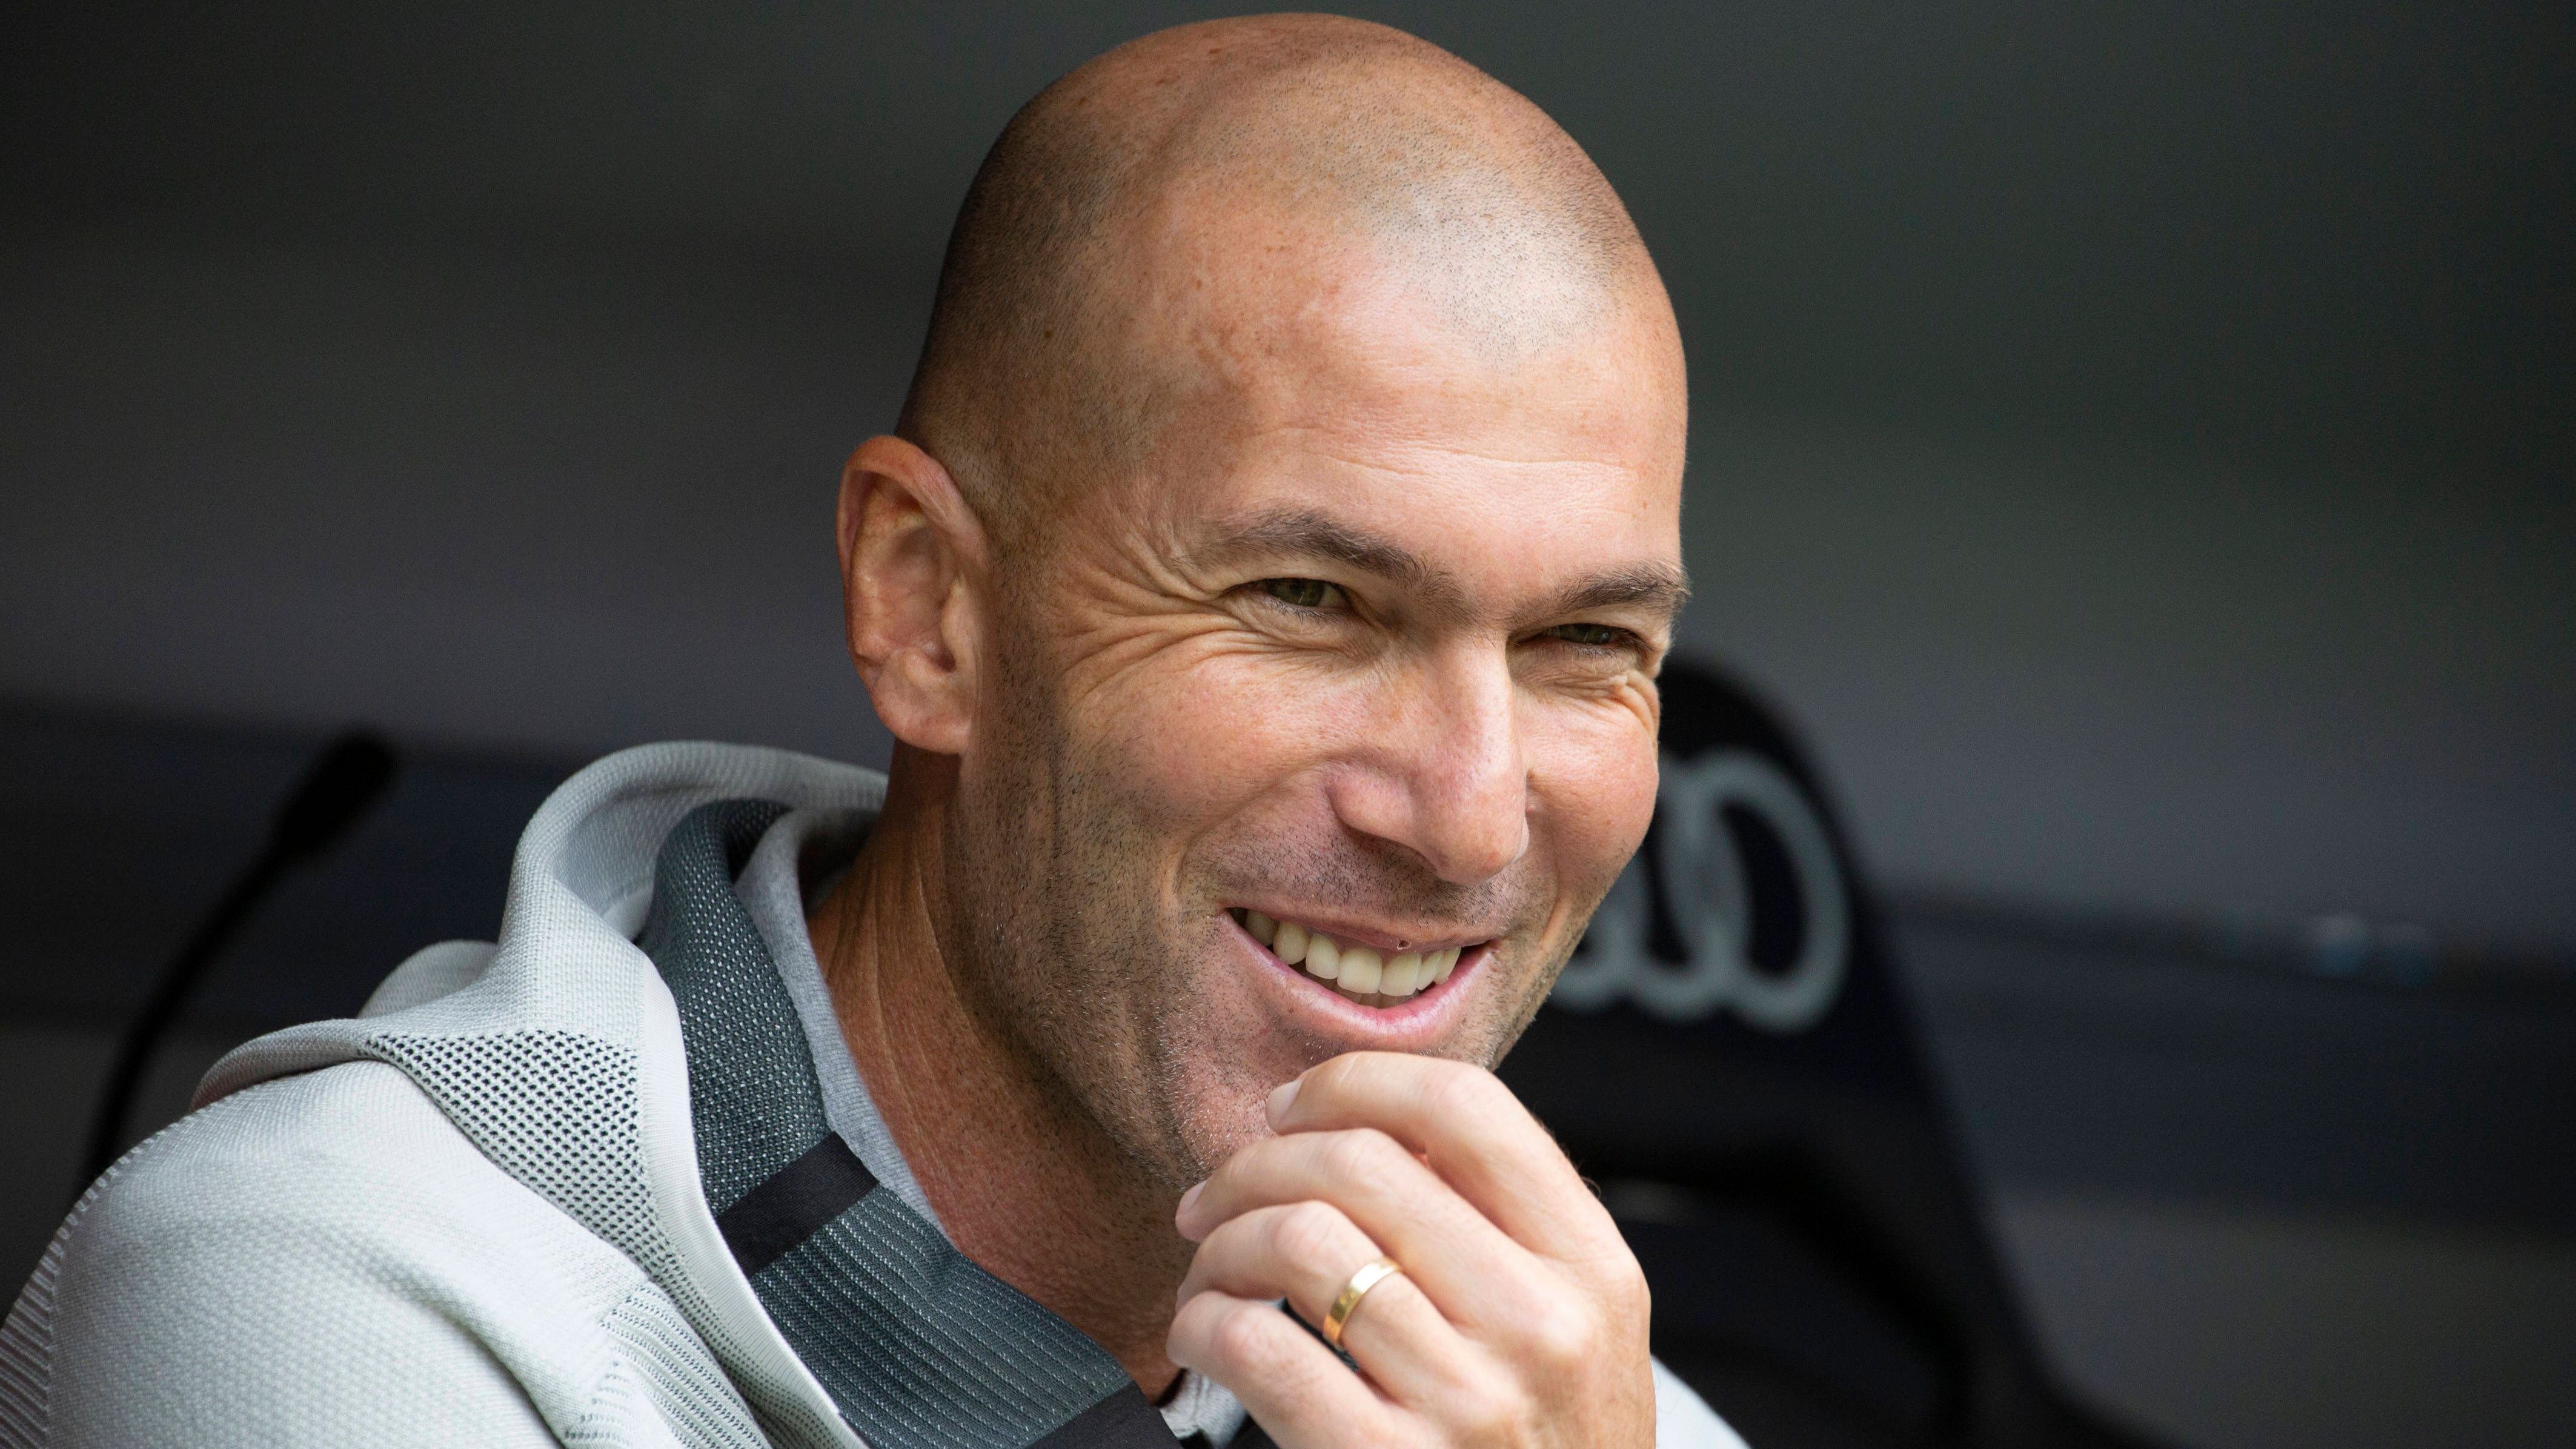 <strong>Zinedine Zidane (vereinslos)</strong><br>... und antwortete auf die Frage, ob er den FCB in Zukunft trainieren könnte, mit einem Grinsen: "Nein, ich werde mir das Spiel anschauen." Zidanes Aussage lässt reichlich Raum für Spekulationen und dürfte weder als klare Zu- oder Absage zu verstehen sein. Vor wenigen Wochen vermeldete die französische "L'Equipe" jedoch, dass Zidane lieber Manchester United als den FC Bayern übernehmen würde.